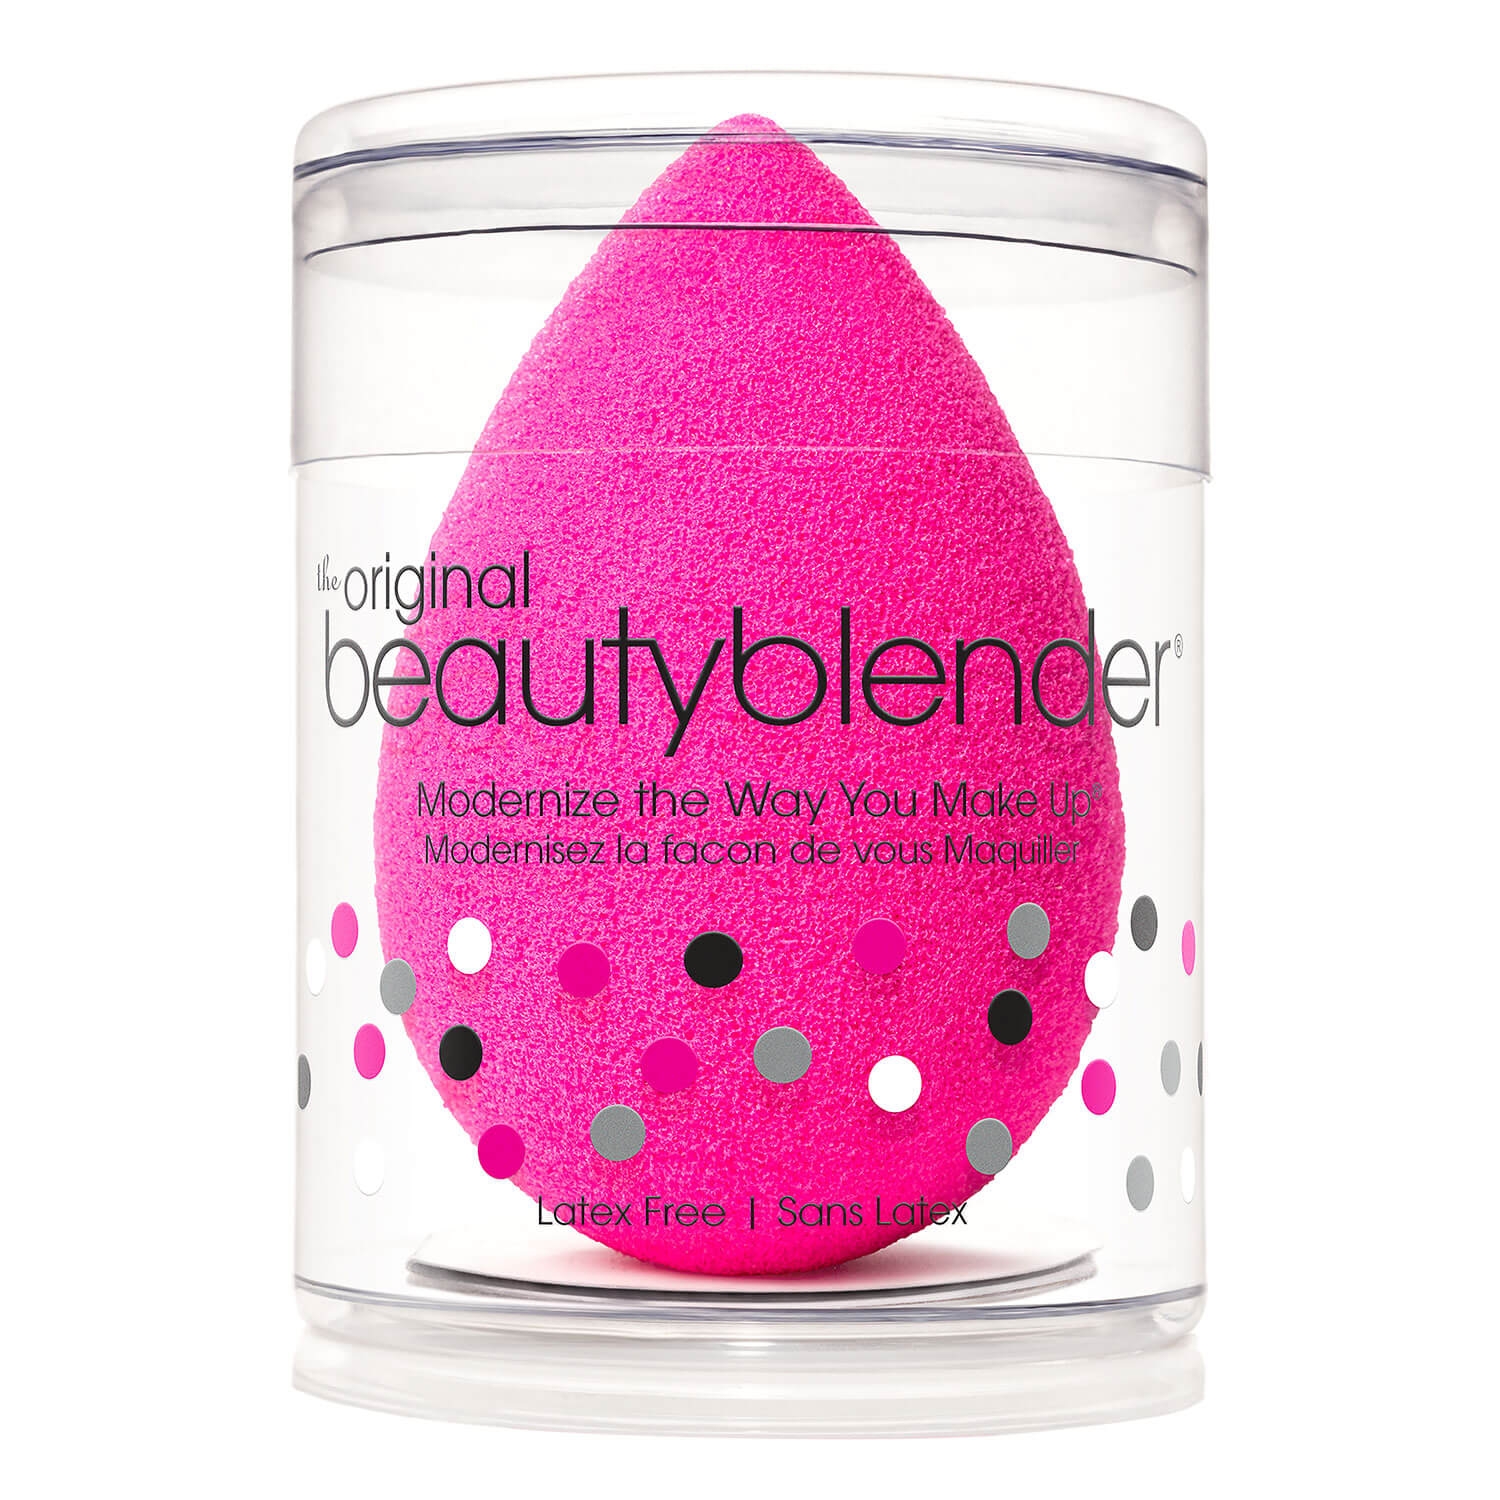 Produktbild von Beautyblender - Original, pink